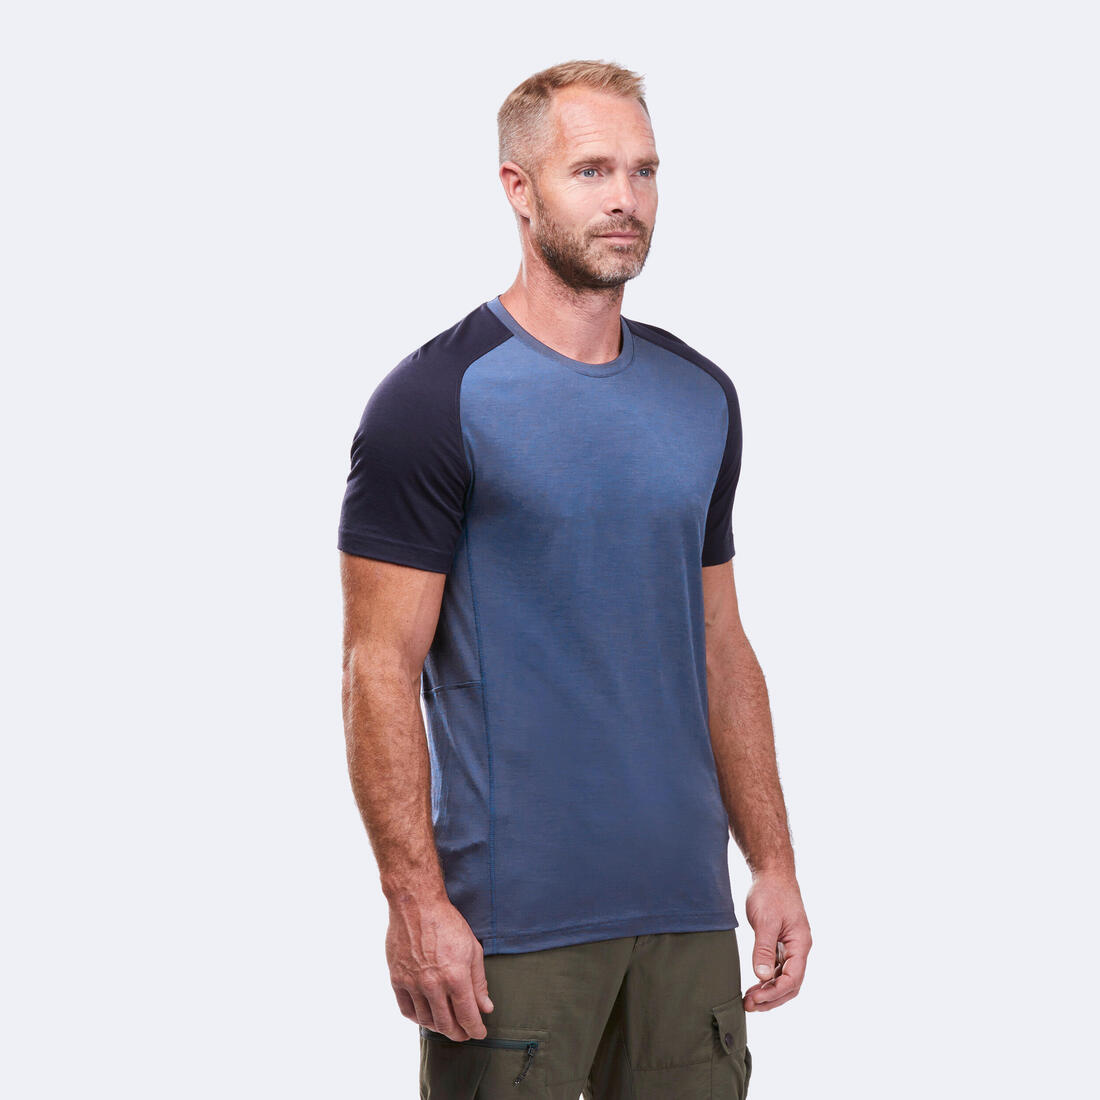 FORCLAZ（フォルクラ）トレッキング メンズ Tシャツ メリノウール 半袖 MT500